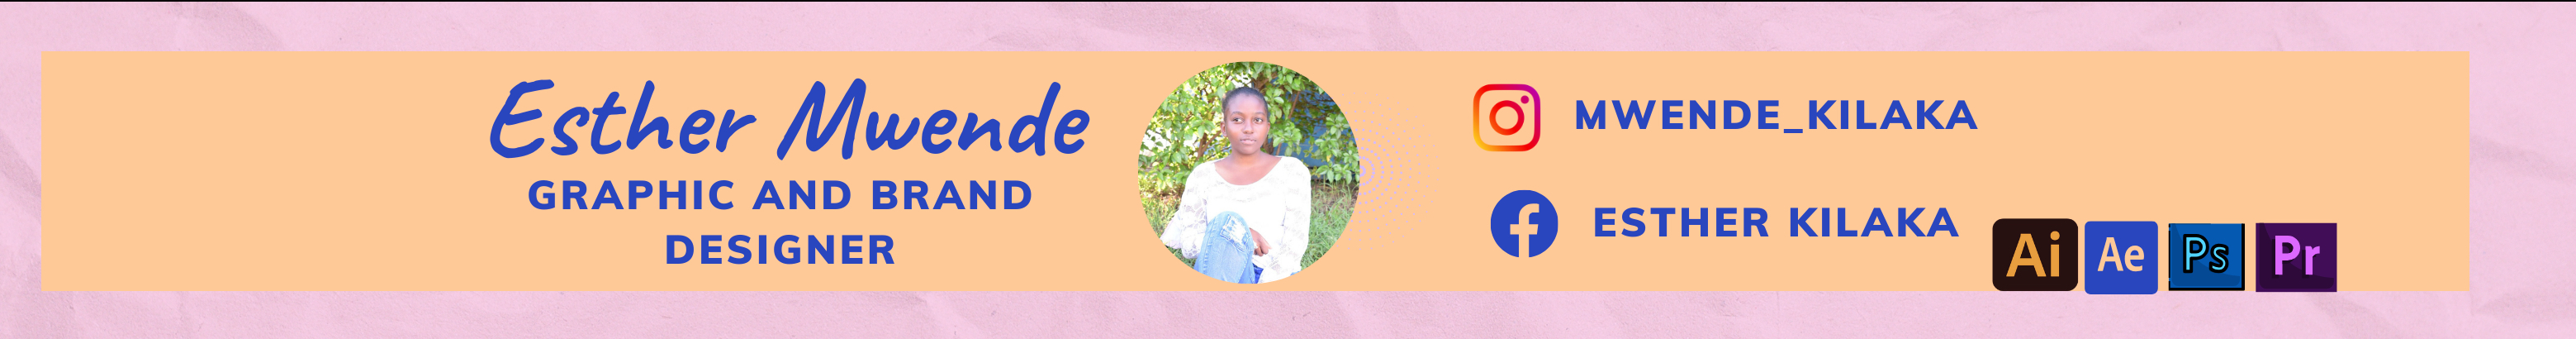 Esther Mwende profil başlığı